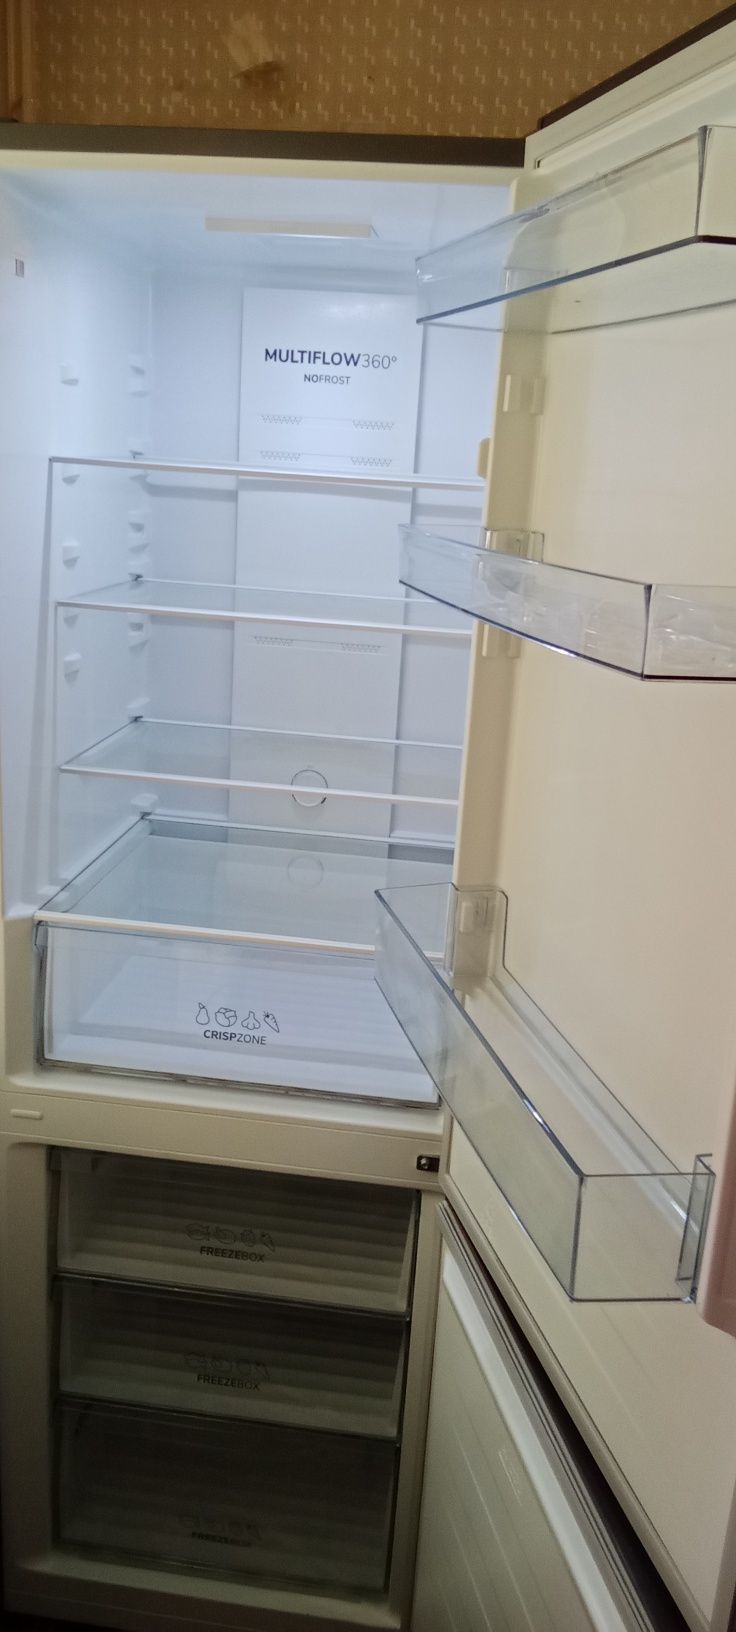 Холодильник 2-х камерный в новом состоянии